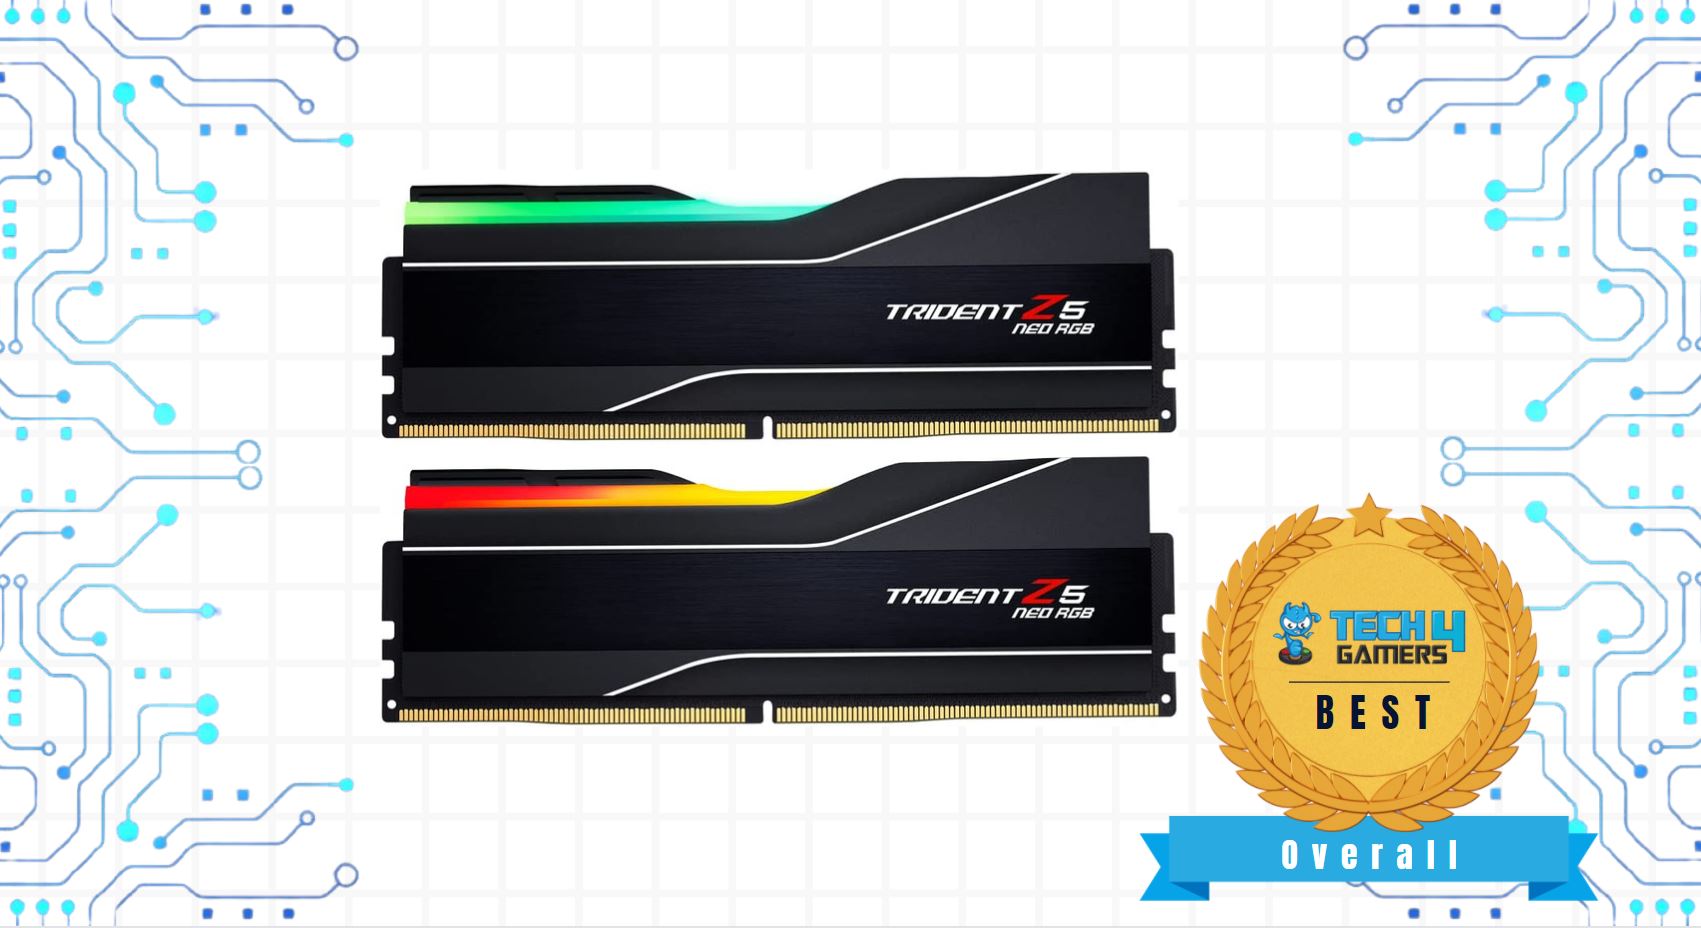 Best Overall RAM for Ryzen 9 7900x - G.Skill Trident Z5 Neo RGB